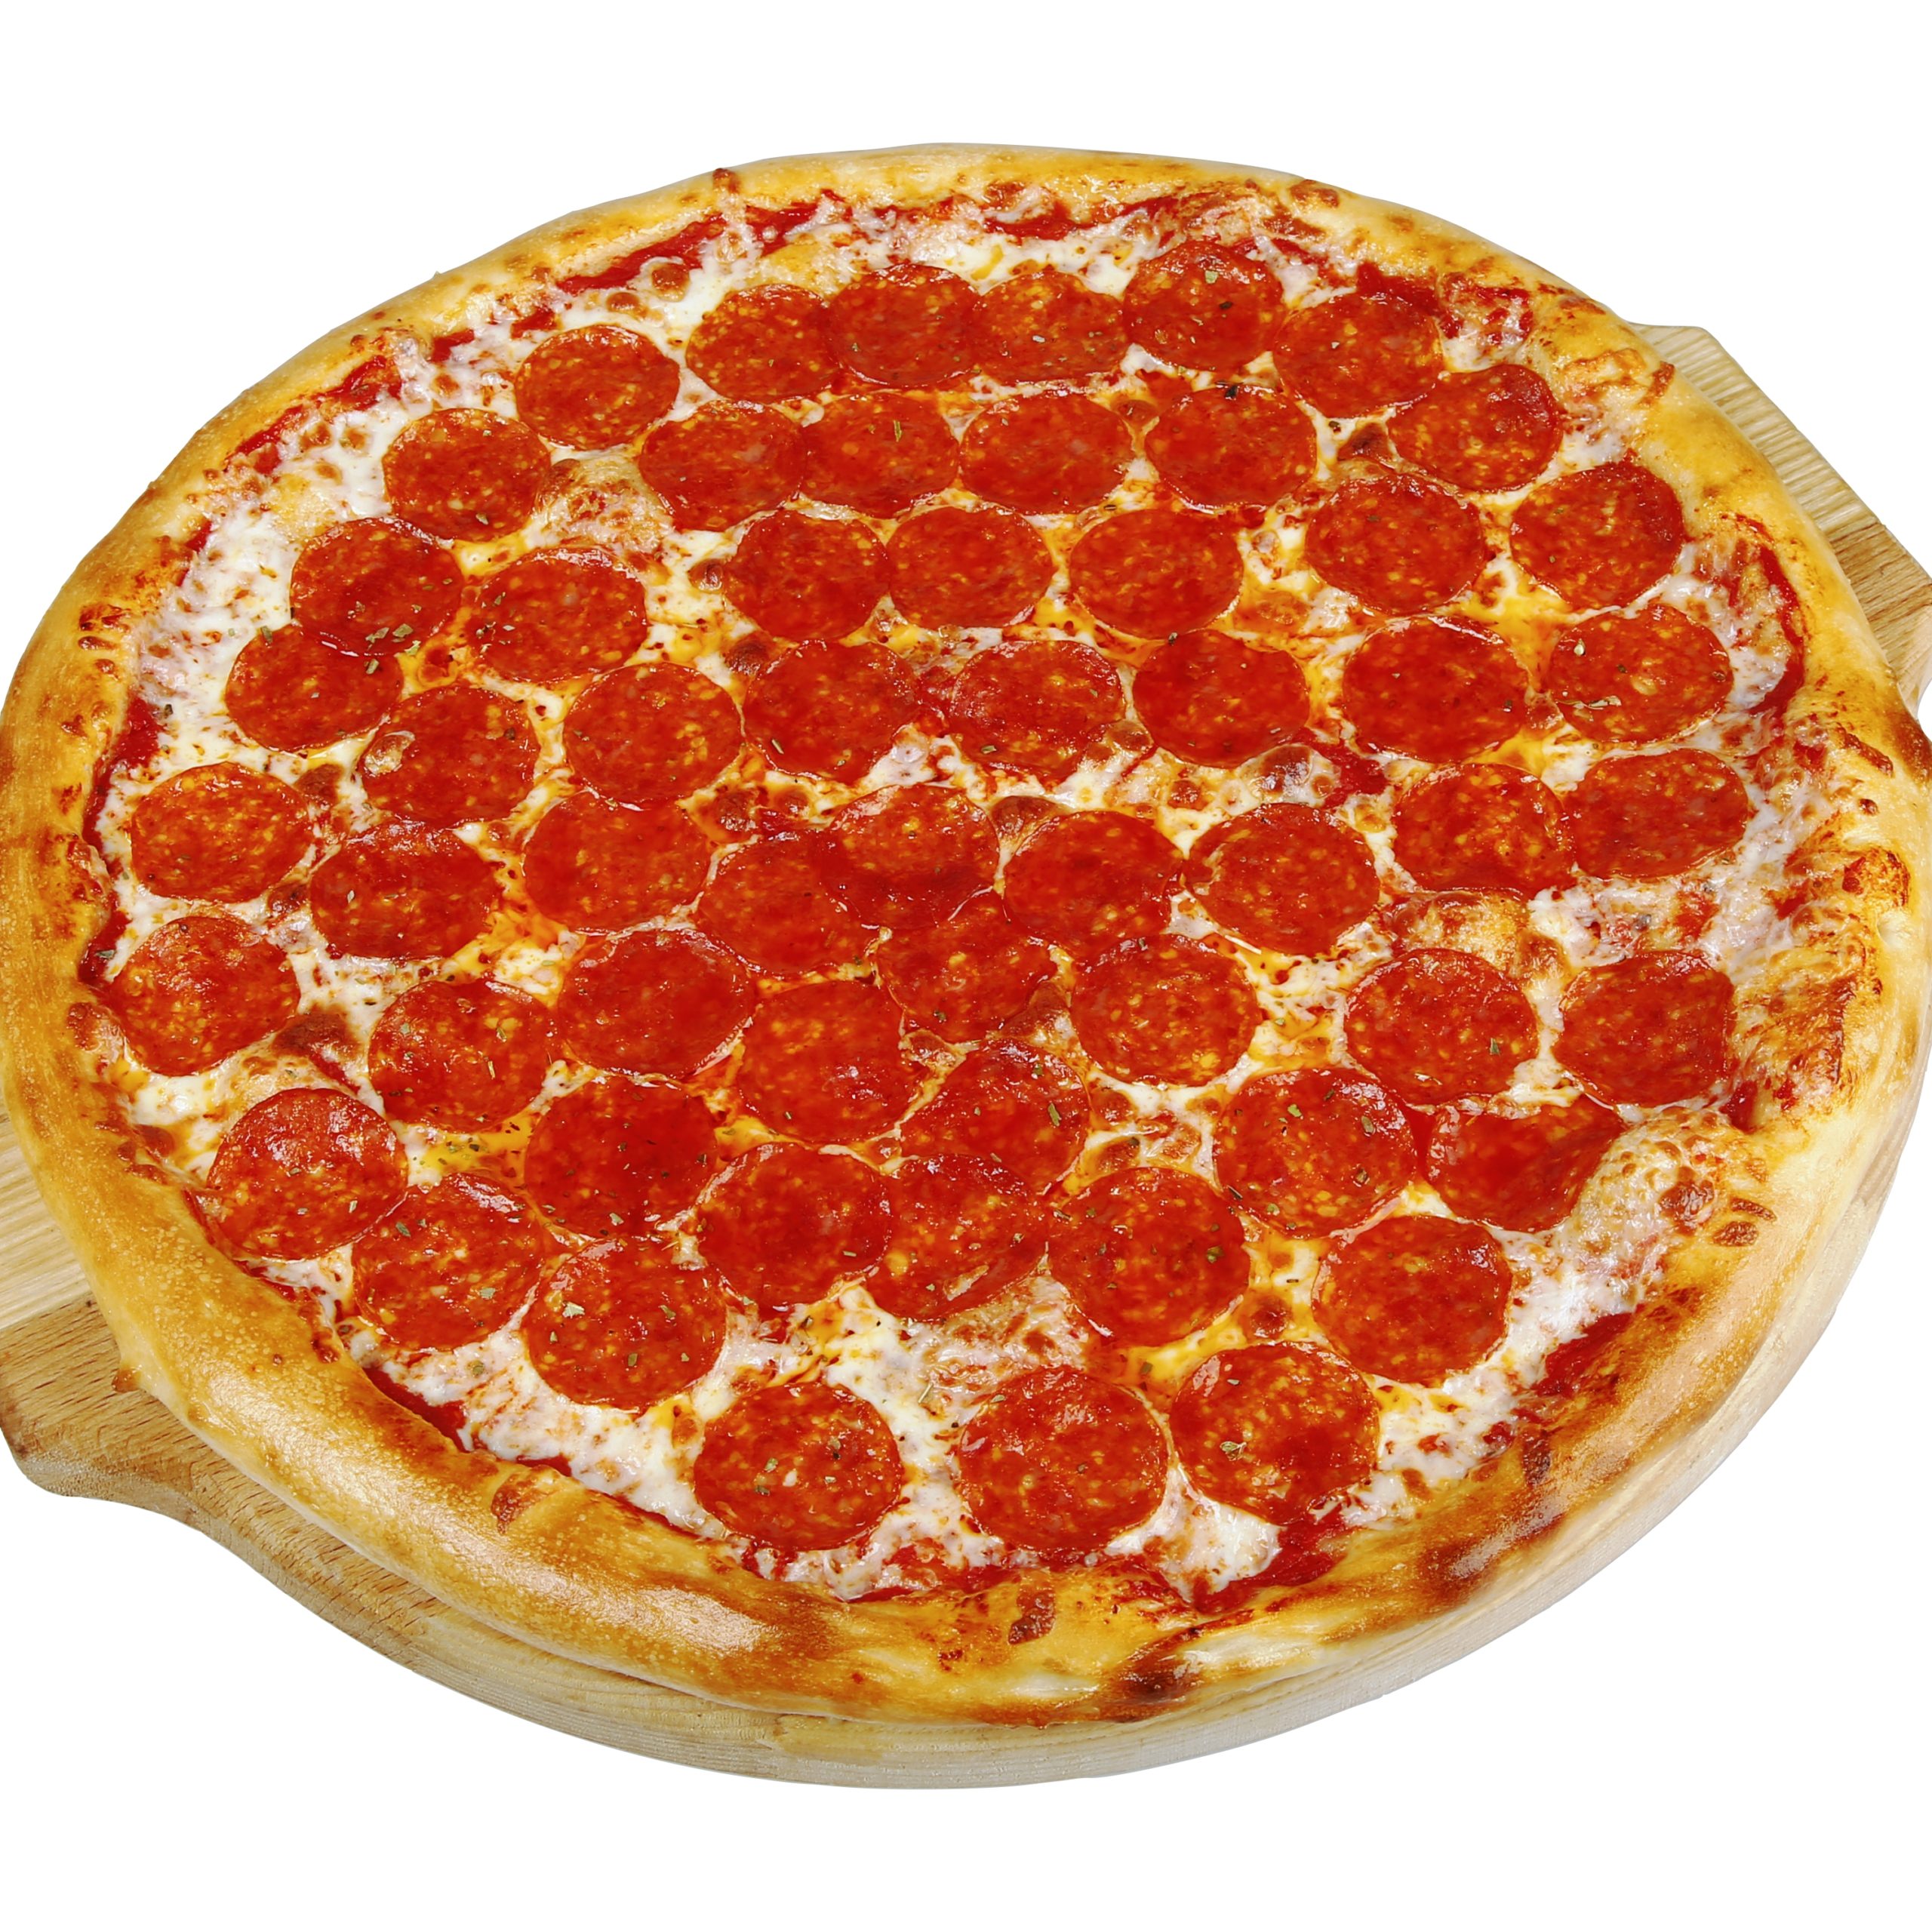 Пицца 24 см. Пицца пепперони 25 см. Пицца пепперони 30 см. Пепперони 40 см. Пицца Дабл пепперони.